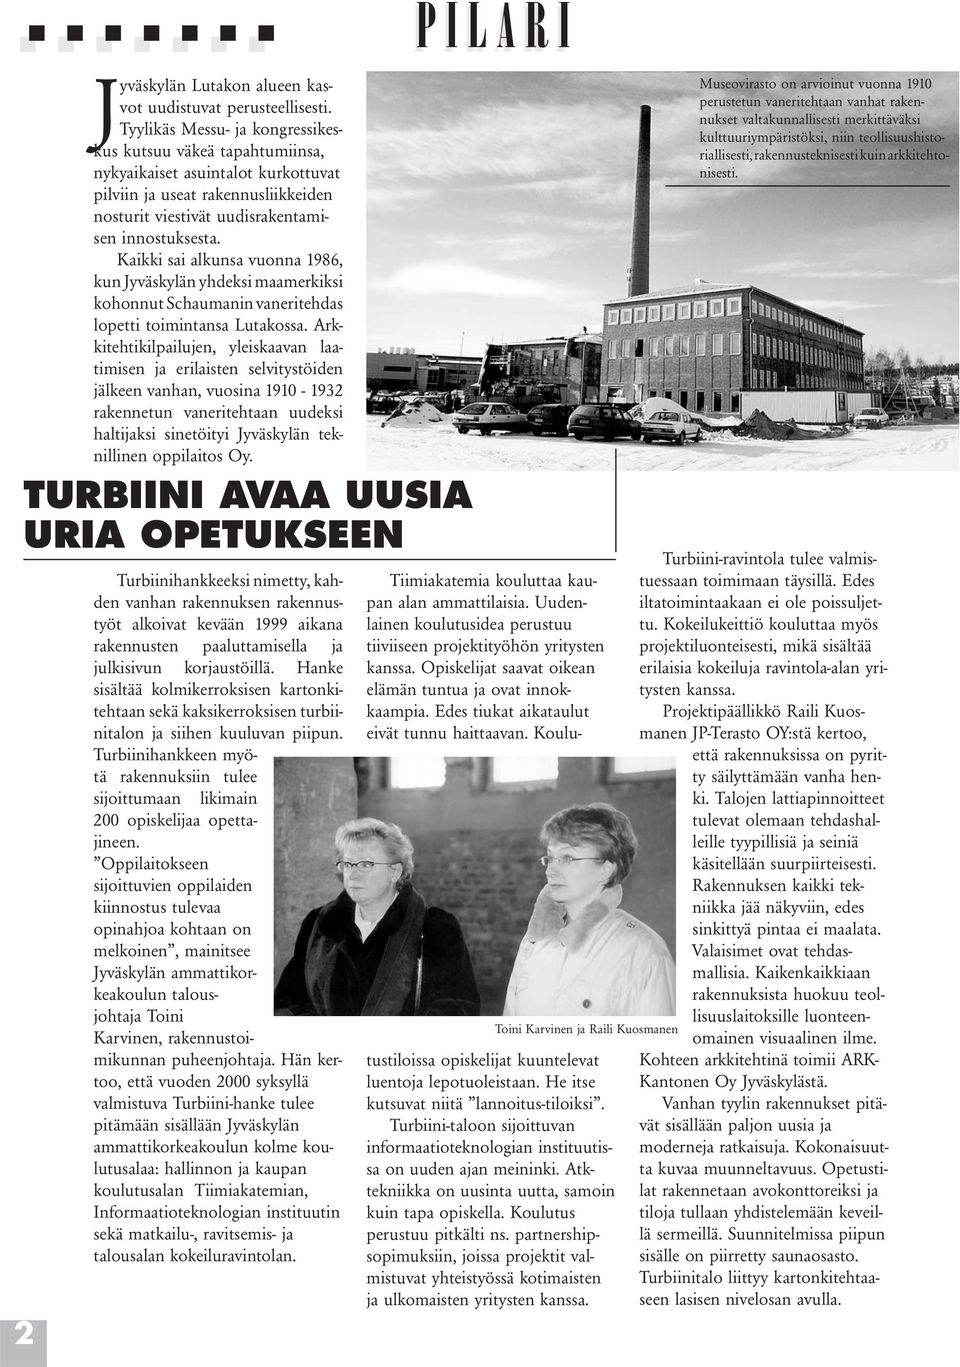 Kaikki sai alkunsa vuonna 1986, kun Jyväskylän yhdeksi maamerkiksi kohonnut Schaumanin vaneritehdas lopetti toimintansa Lutakossa.